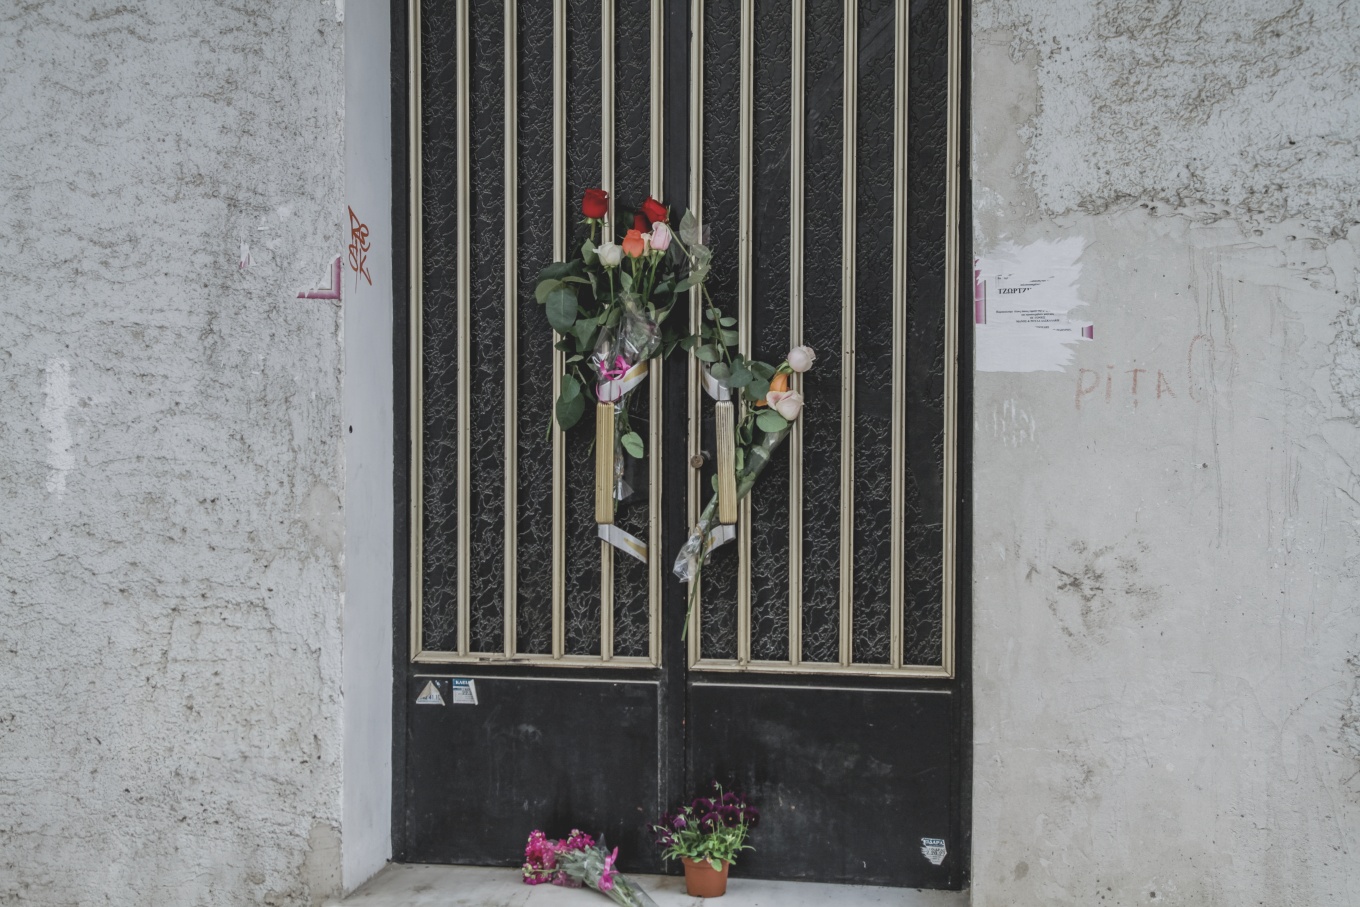 Θάνατος τριών παιδιών: Εντολή ανακρίτριας για εκταφή του τάμπλετ από τον τάφο της μικρής Τζωρτζίνας